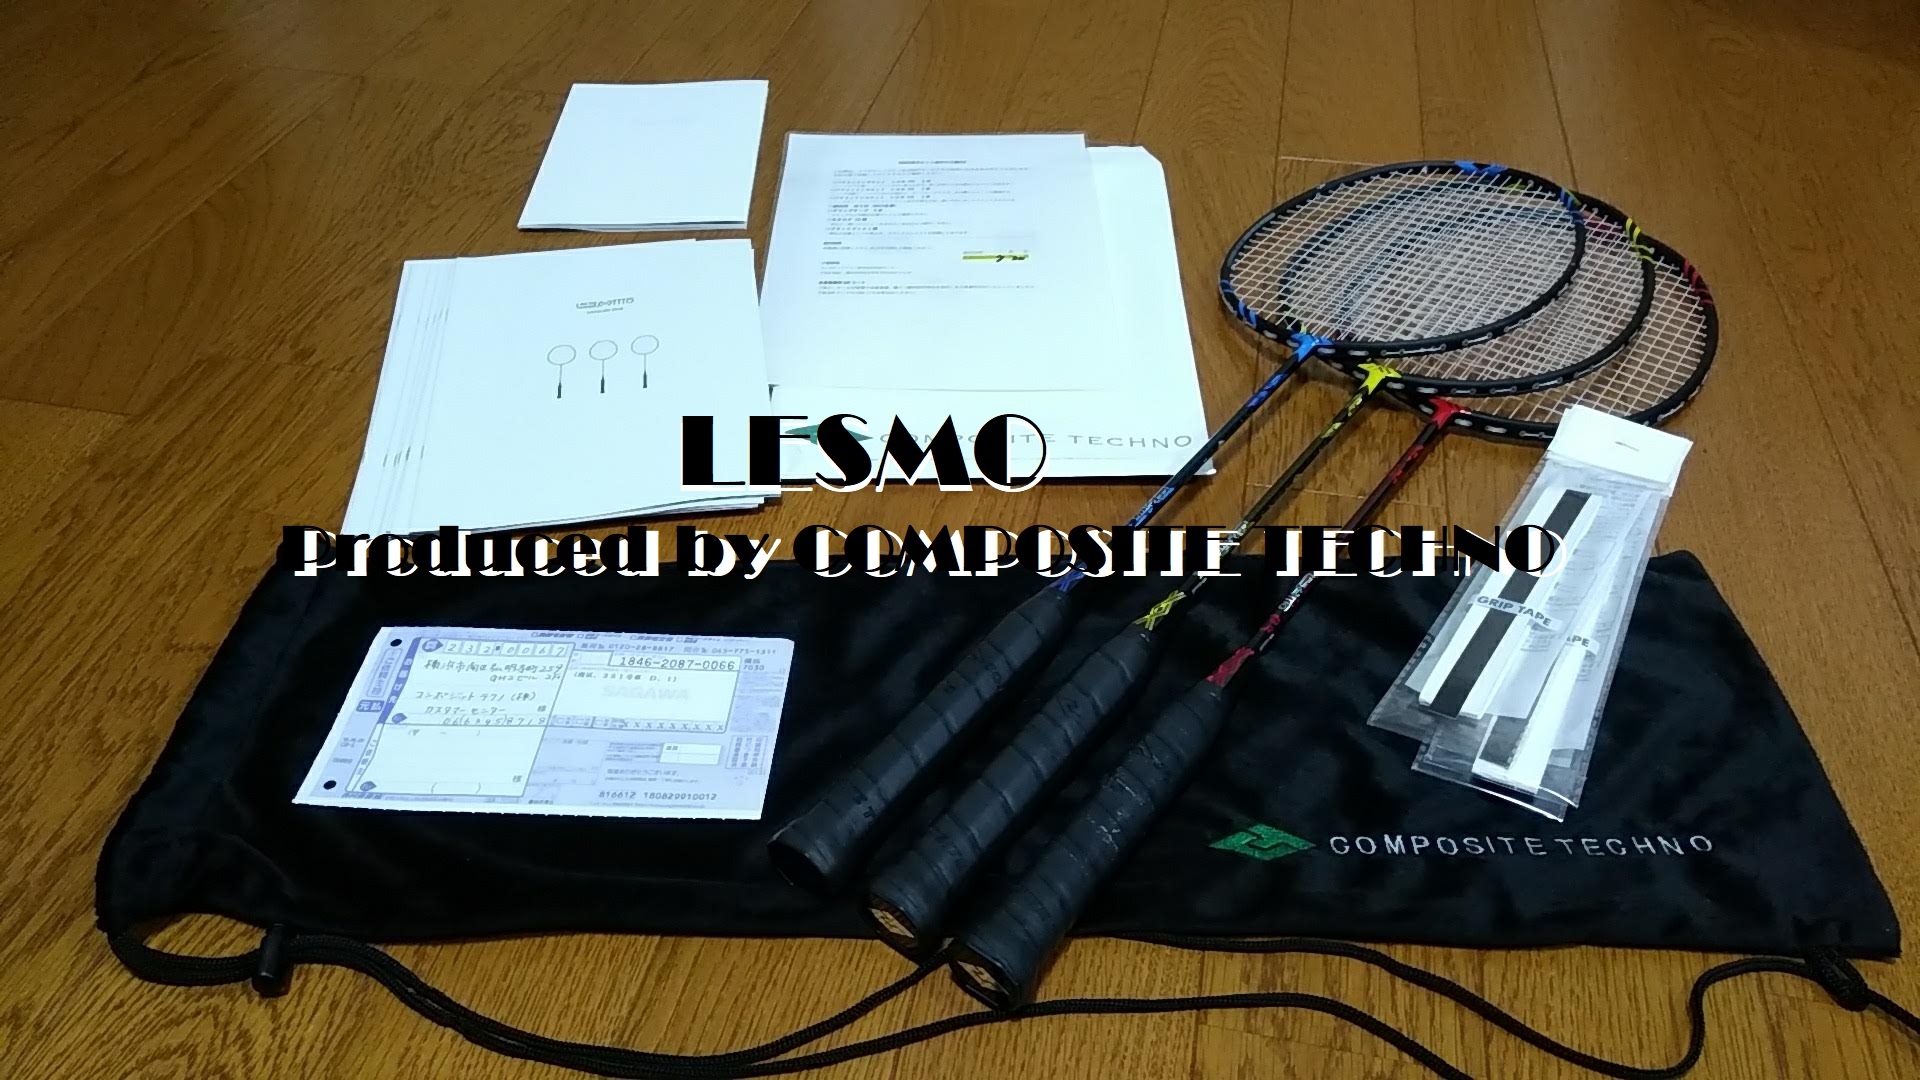 コンポジットテクノのバドミントンラケット『Lesmo』の試打セット